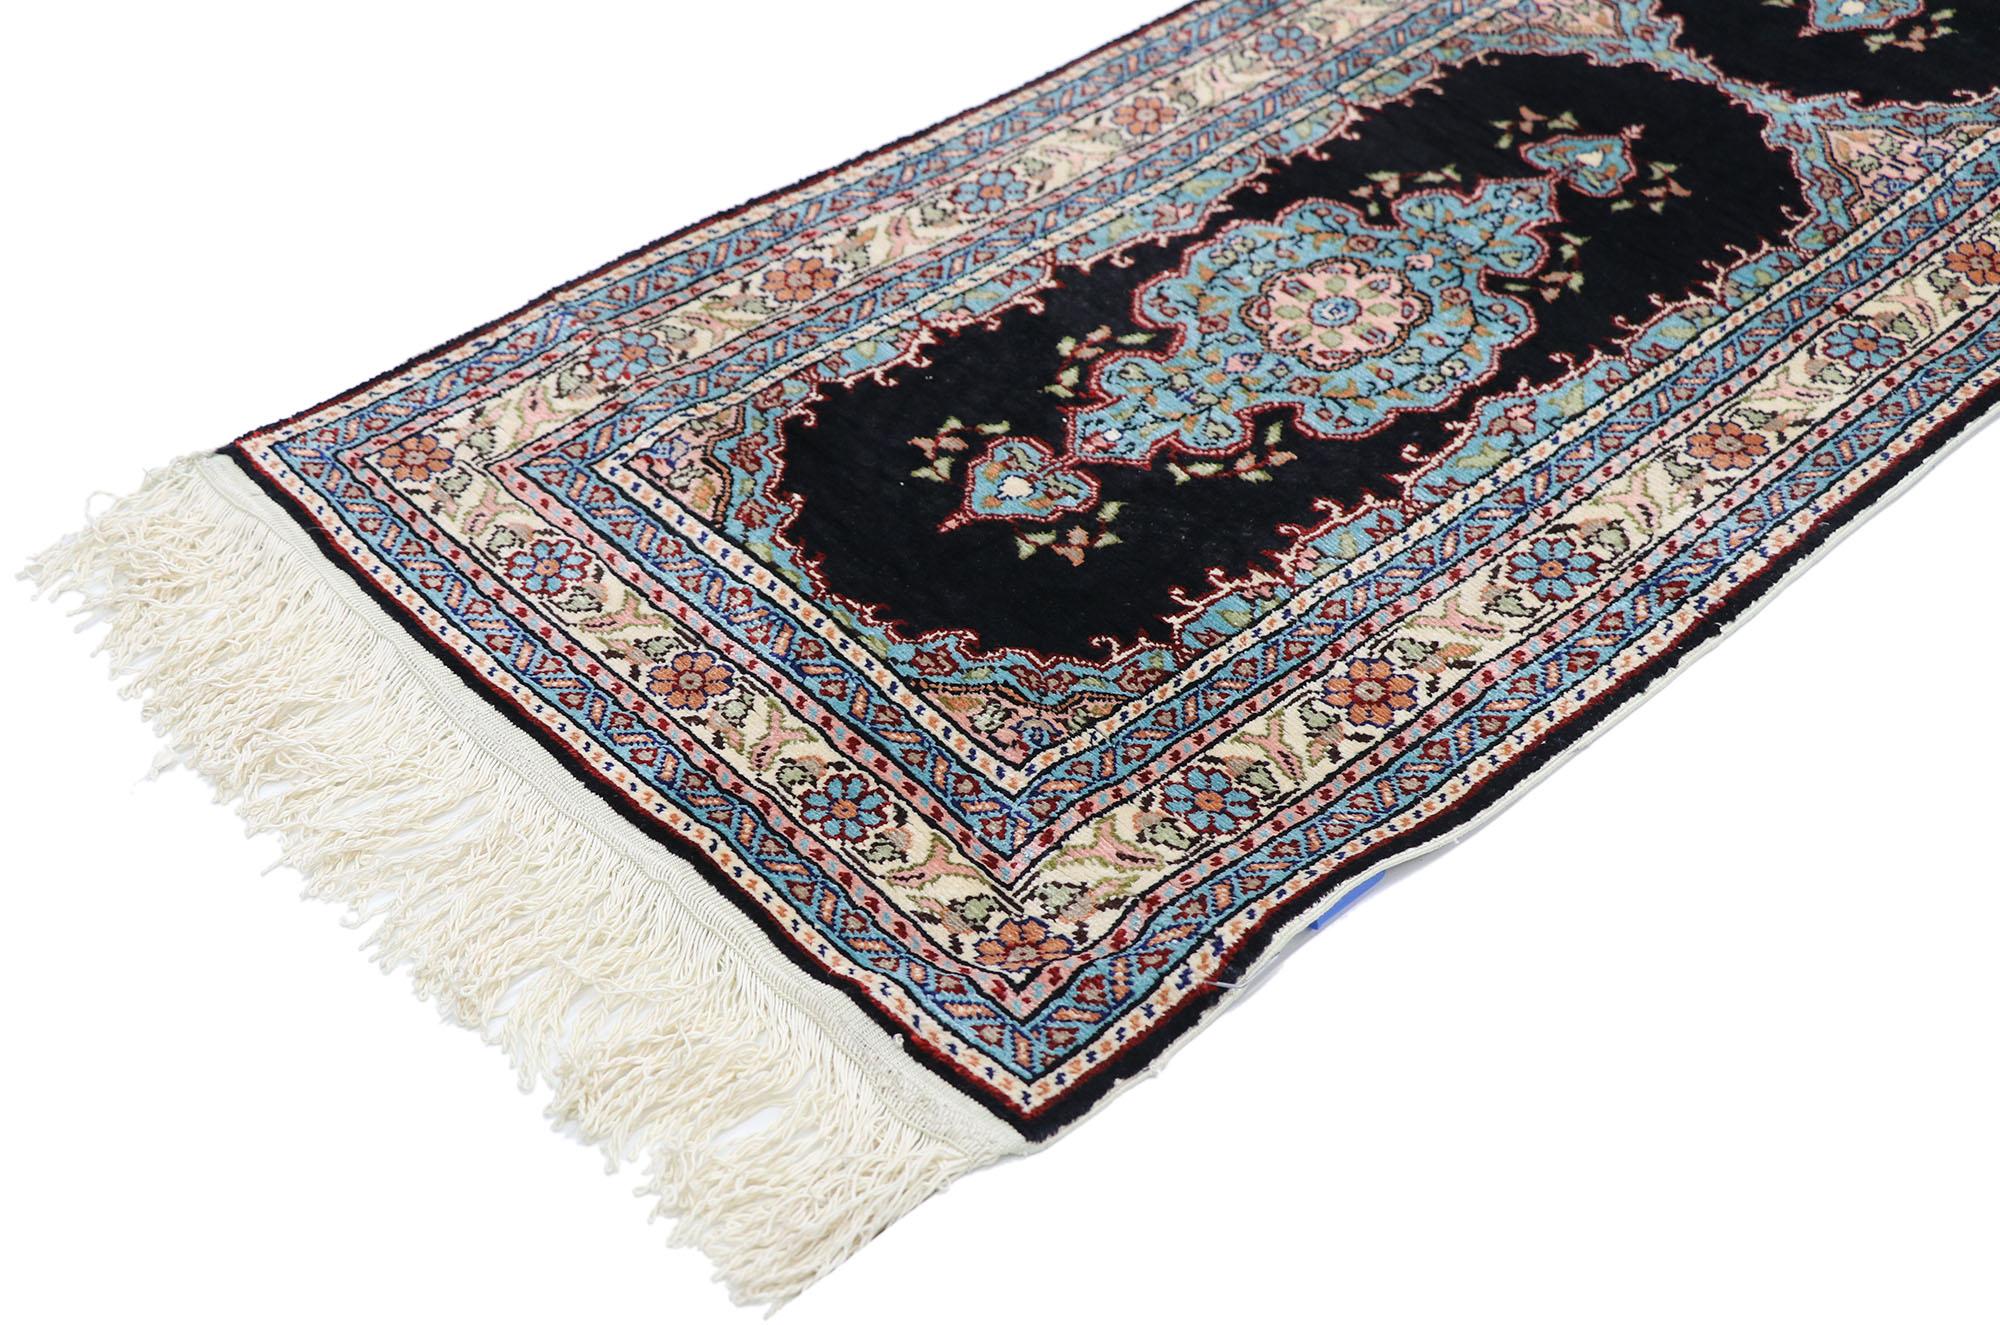 77797 Vintage Türkische Seide Hereke Teppich mit neoklassischen viktorianischen Stil 01'04 x 04'01. Mit kunstvollen Details und ausgewogener Symmetrie, kombiniert mit einer königlichen Farbpalette, verkörpert dieser handgeknüpfte Teppich aus